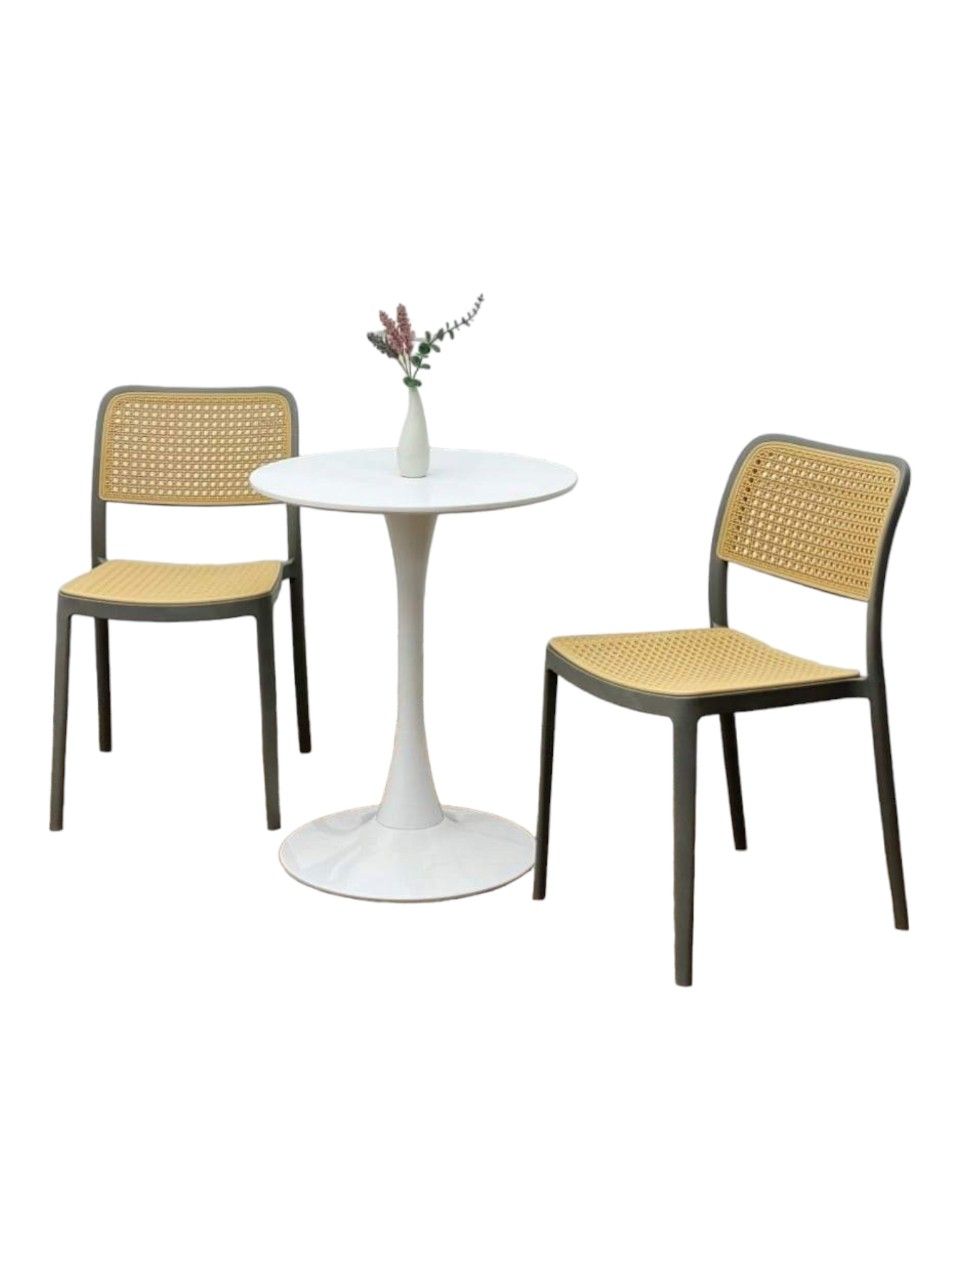 Bộ bàn ghế cafe tiếp khách hiện đại: KG – T117-22